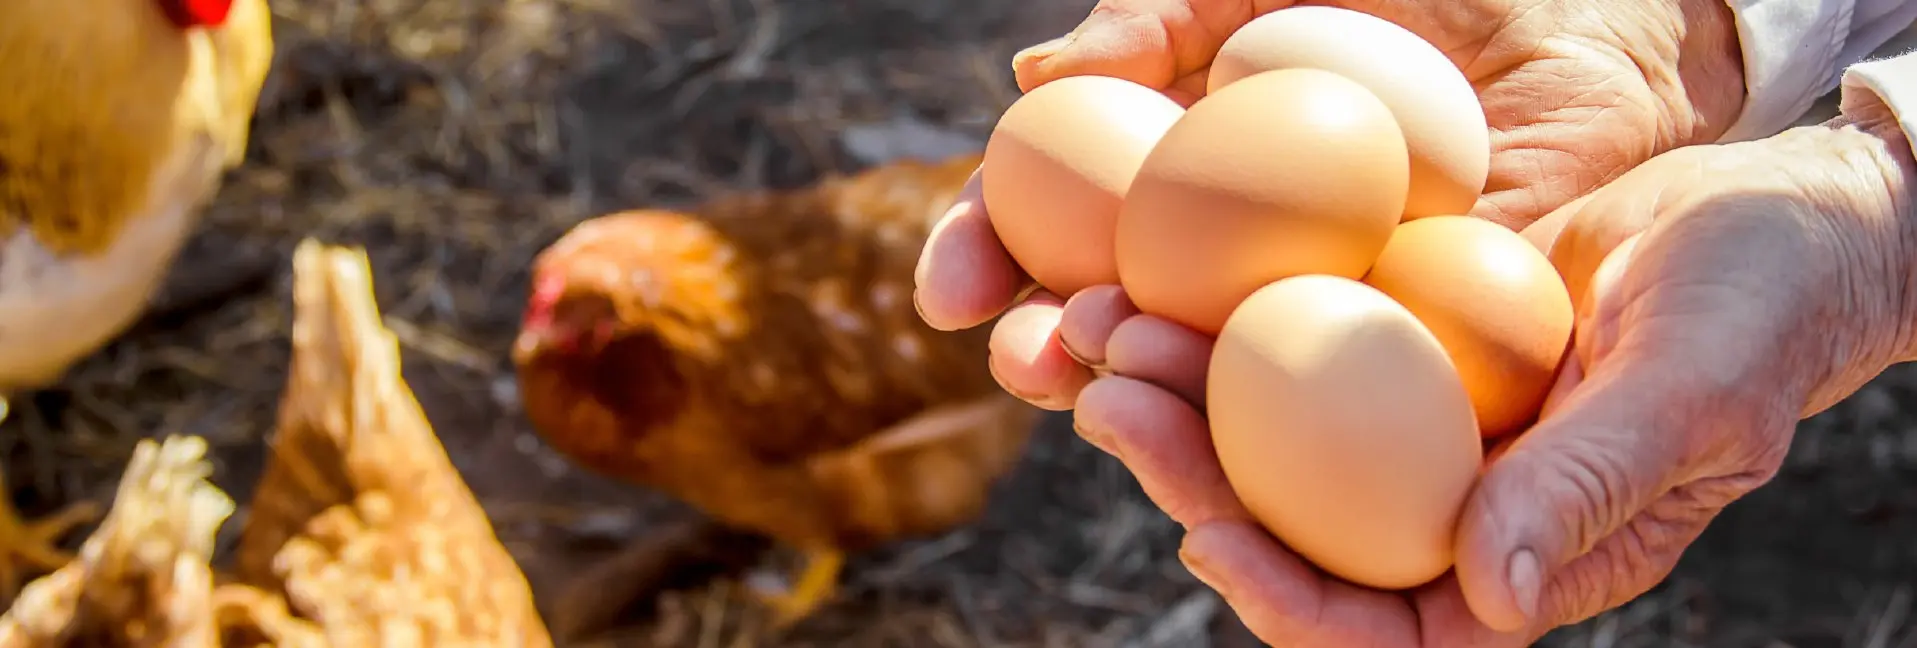 خرید نیمچه مرغ تخمگذار بومی - سپید طیور